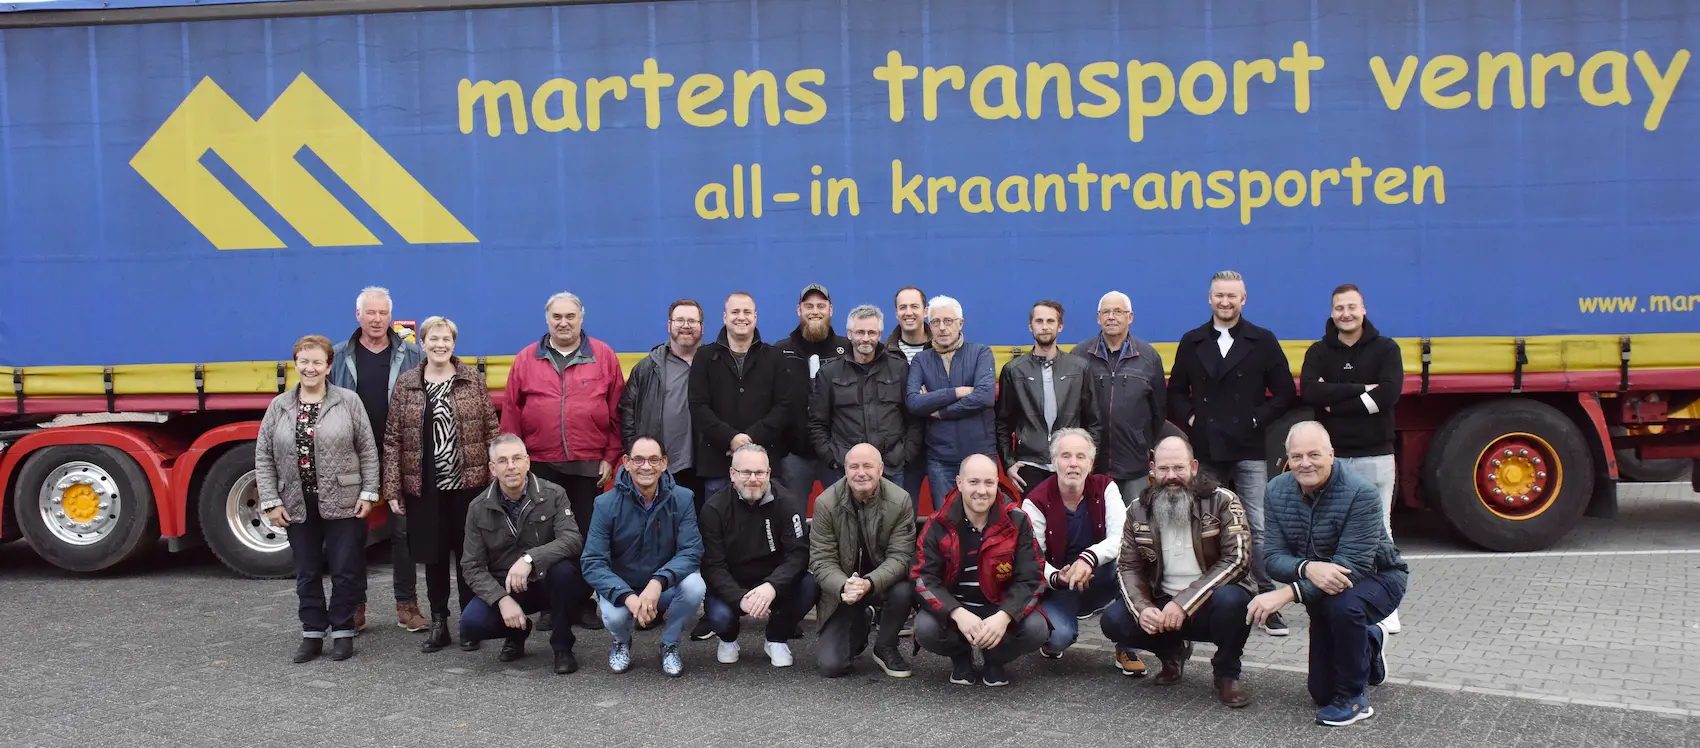 Team Martens Transport